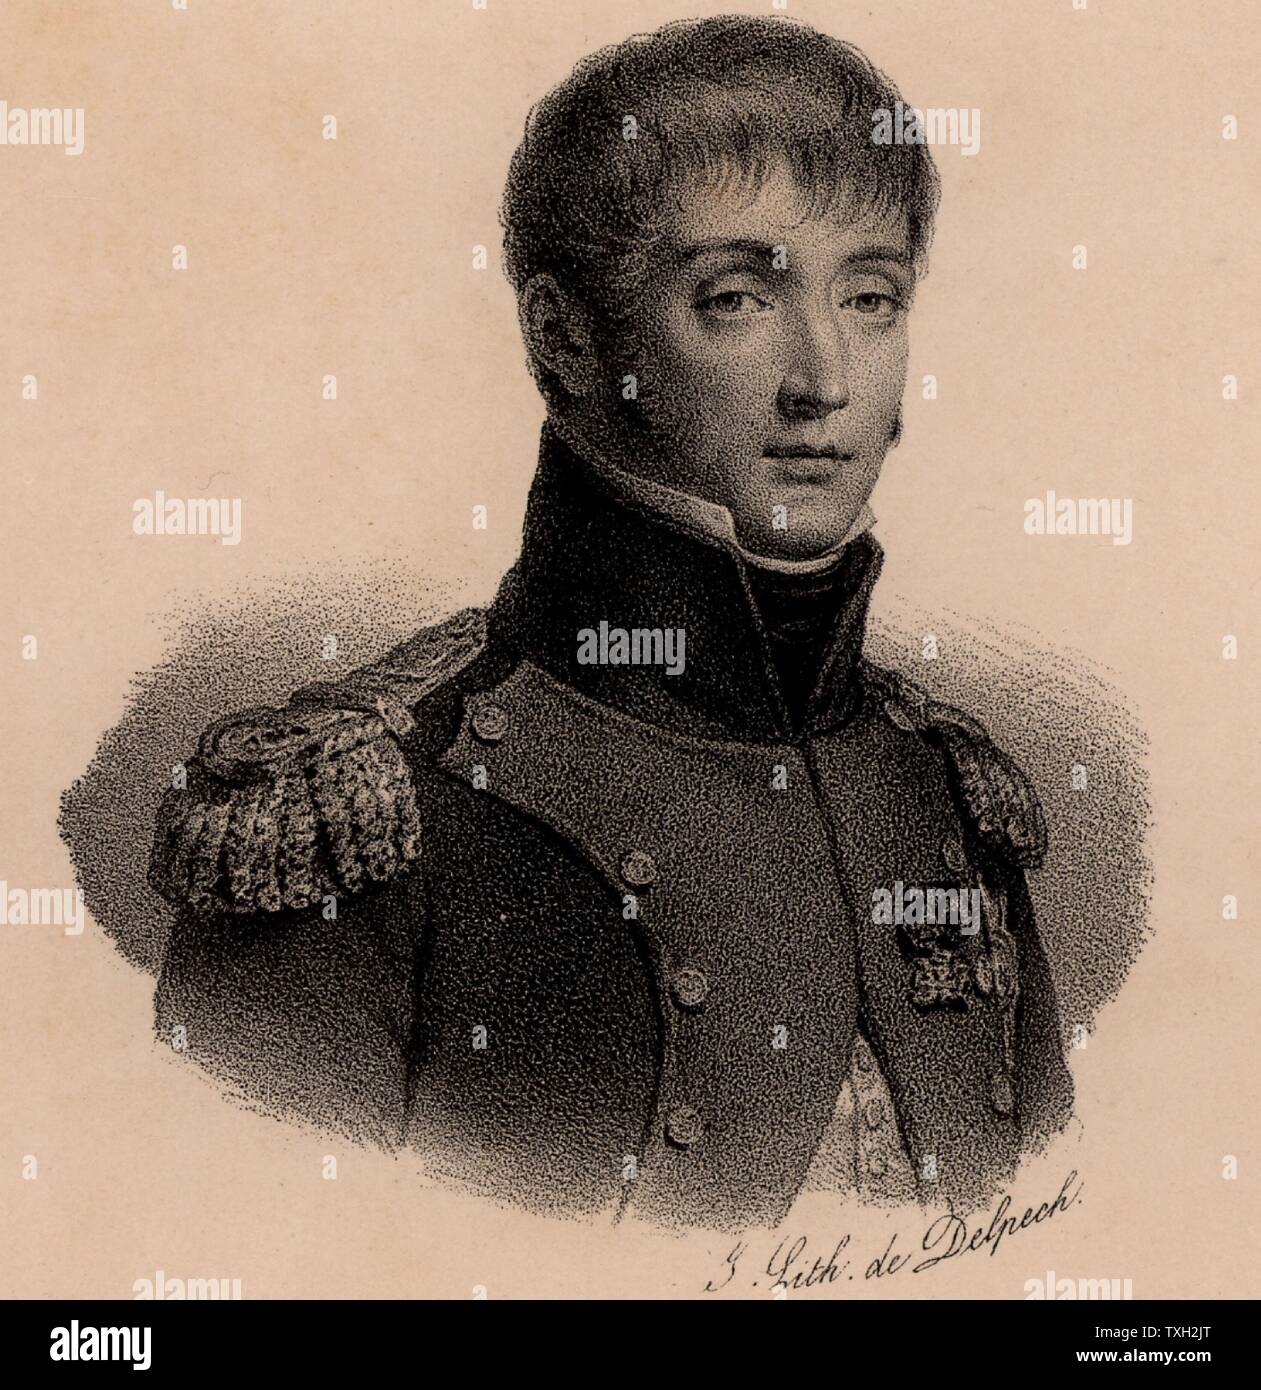 Louis Bonaparte (1778-1846) Französische Soldaten. Der König von Holland unter dem Namen von LODEWIJK I (1806-1810). Bruder von Napoleon Bonaparte, dessen Stieftochter Hortense Beauharnais heiratete er. Vater von Napoleon III. Lithographie, c 1830. Stockfoto